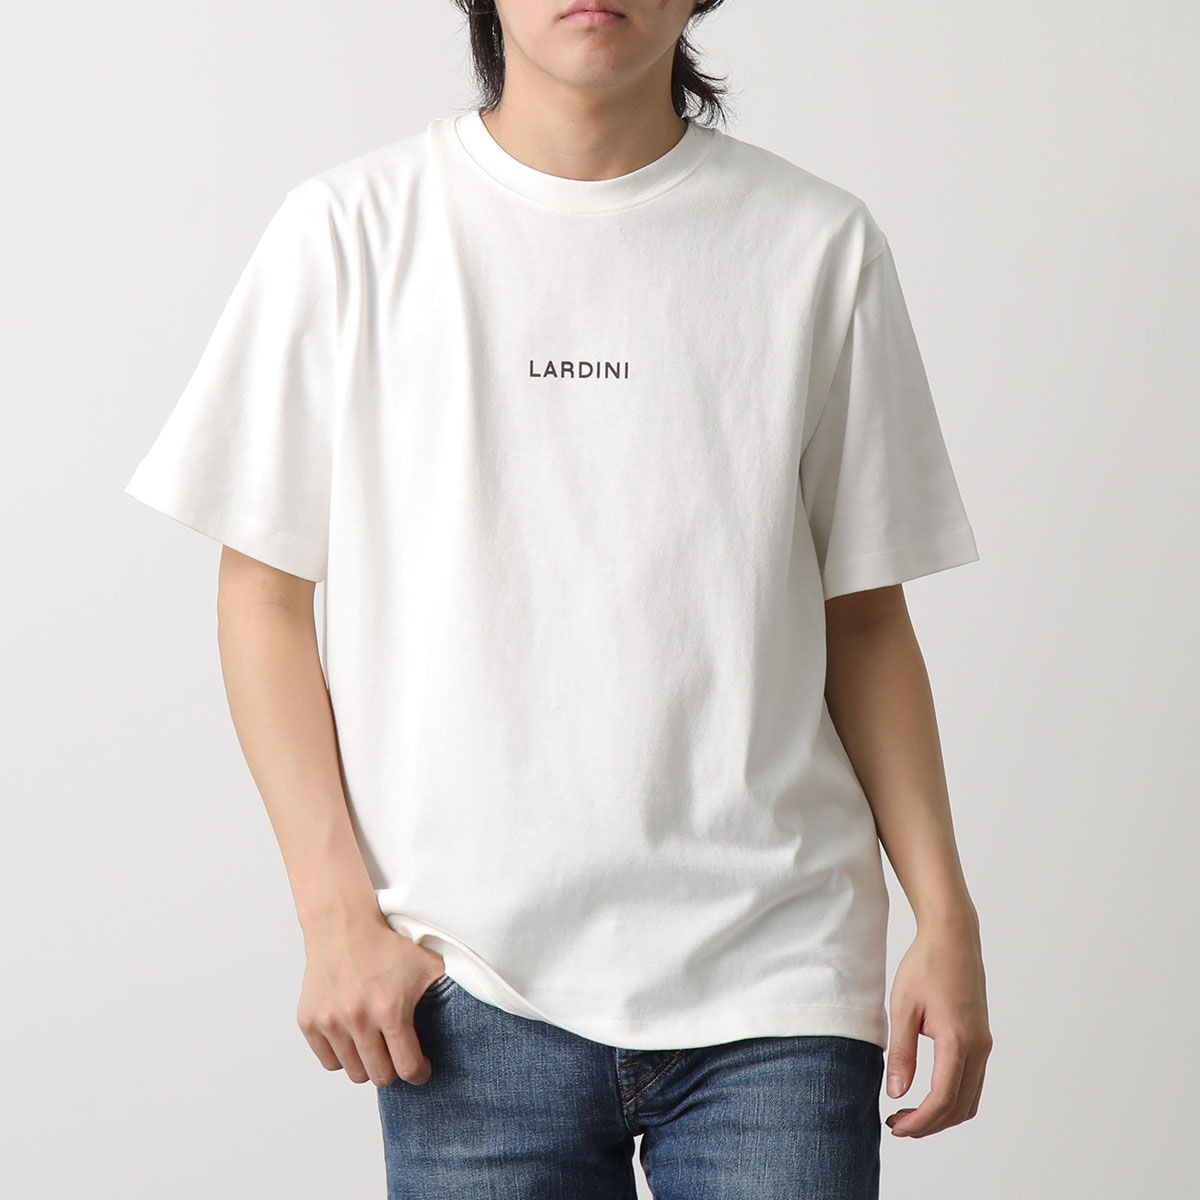 LARDINI ラルディーニ Tシャツ EQLTMC70 EQ62080 メンズ ブートニエール付き...